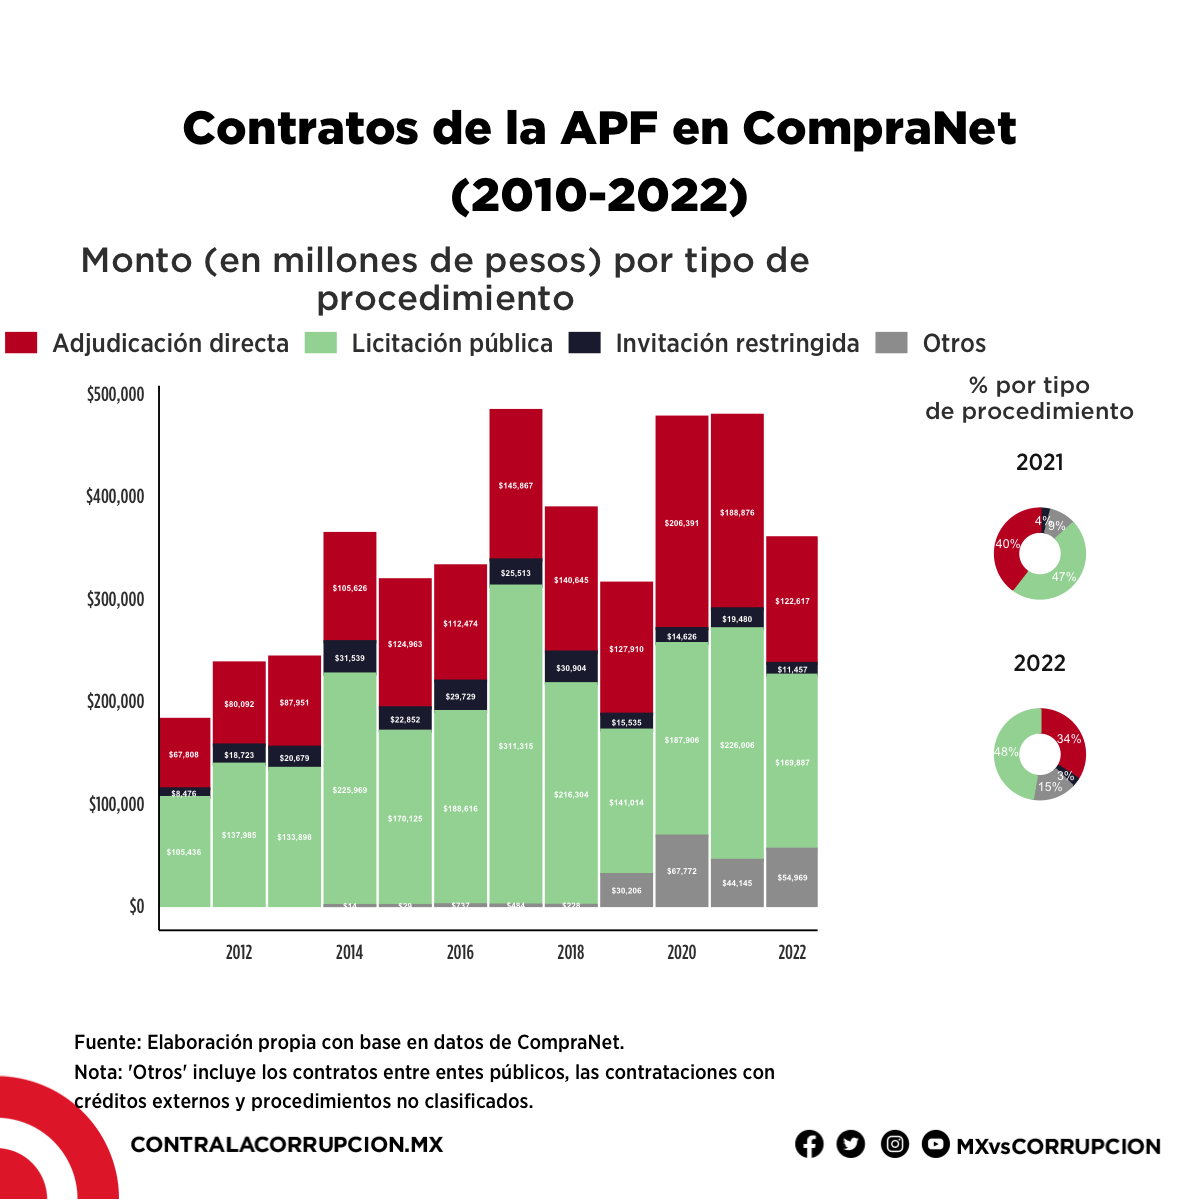 Contratos de la APF en CompraNet (2010-2022)